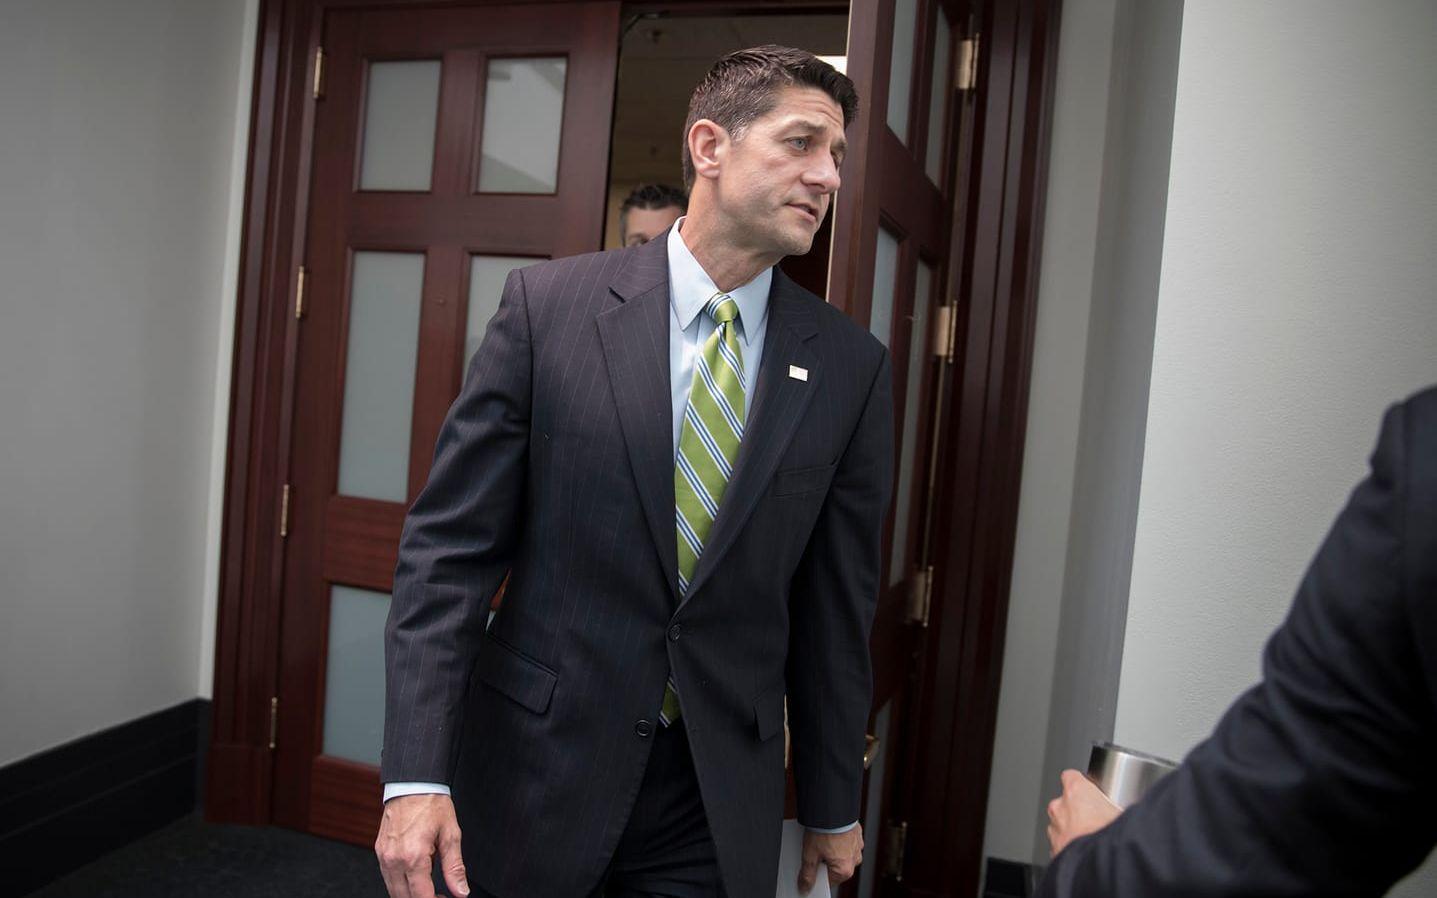 Den ledande republikanen i kongressen, representanthusets talman Paul Ryan: "Vi måste vara tydliga. Vitmakt-grupper är avskyvärda".
